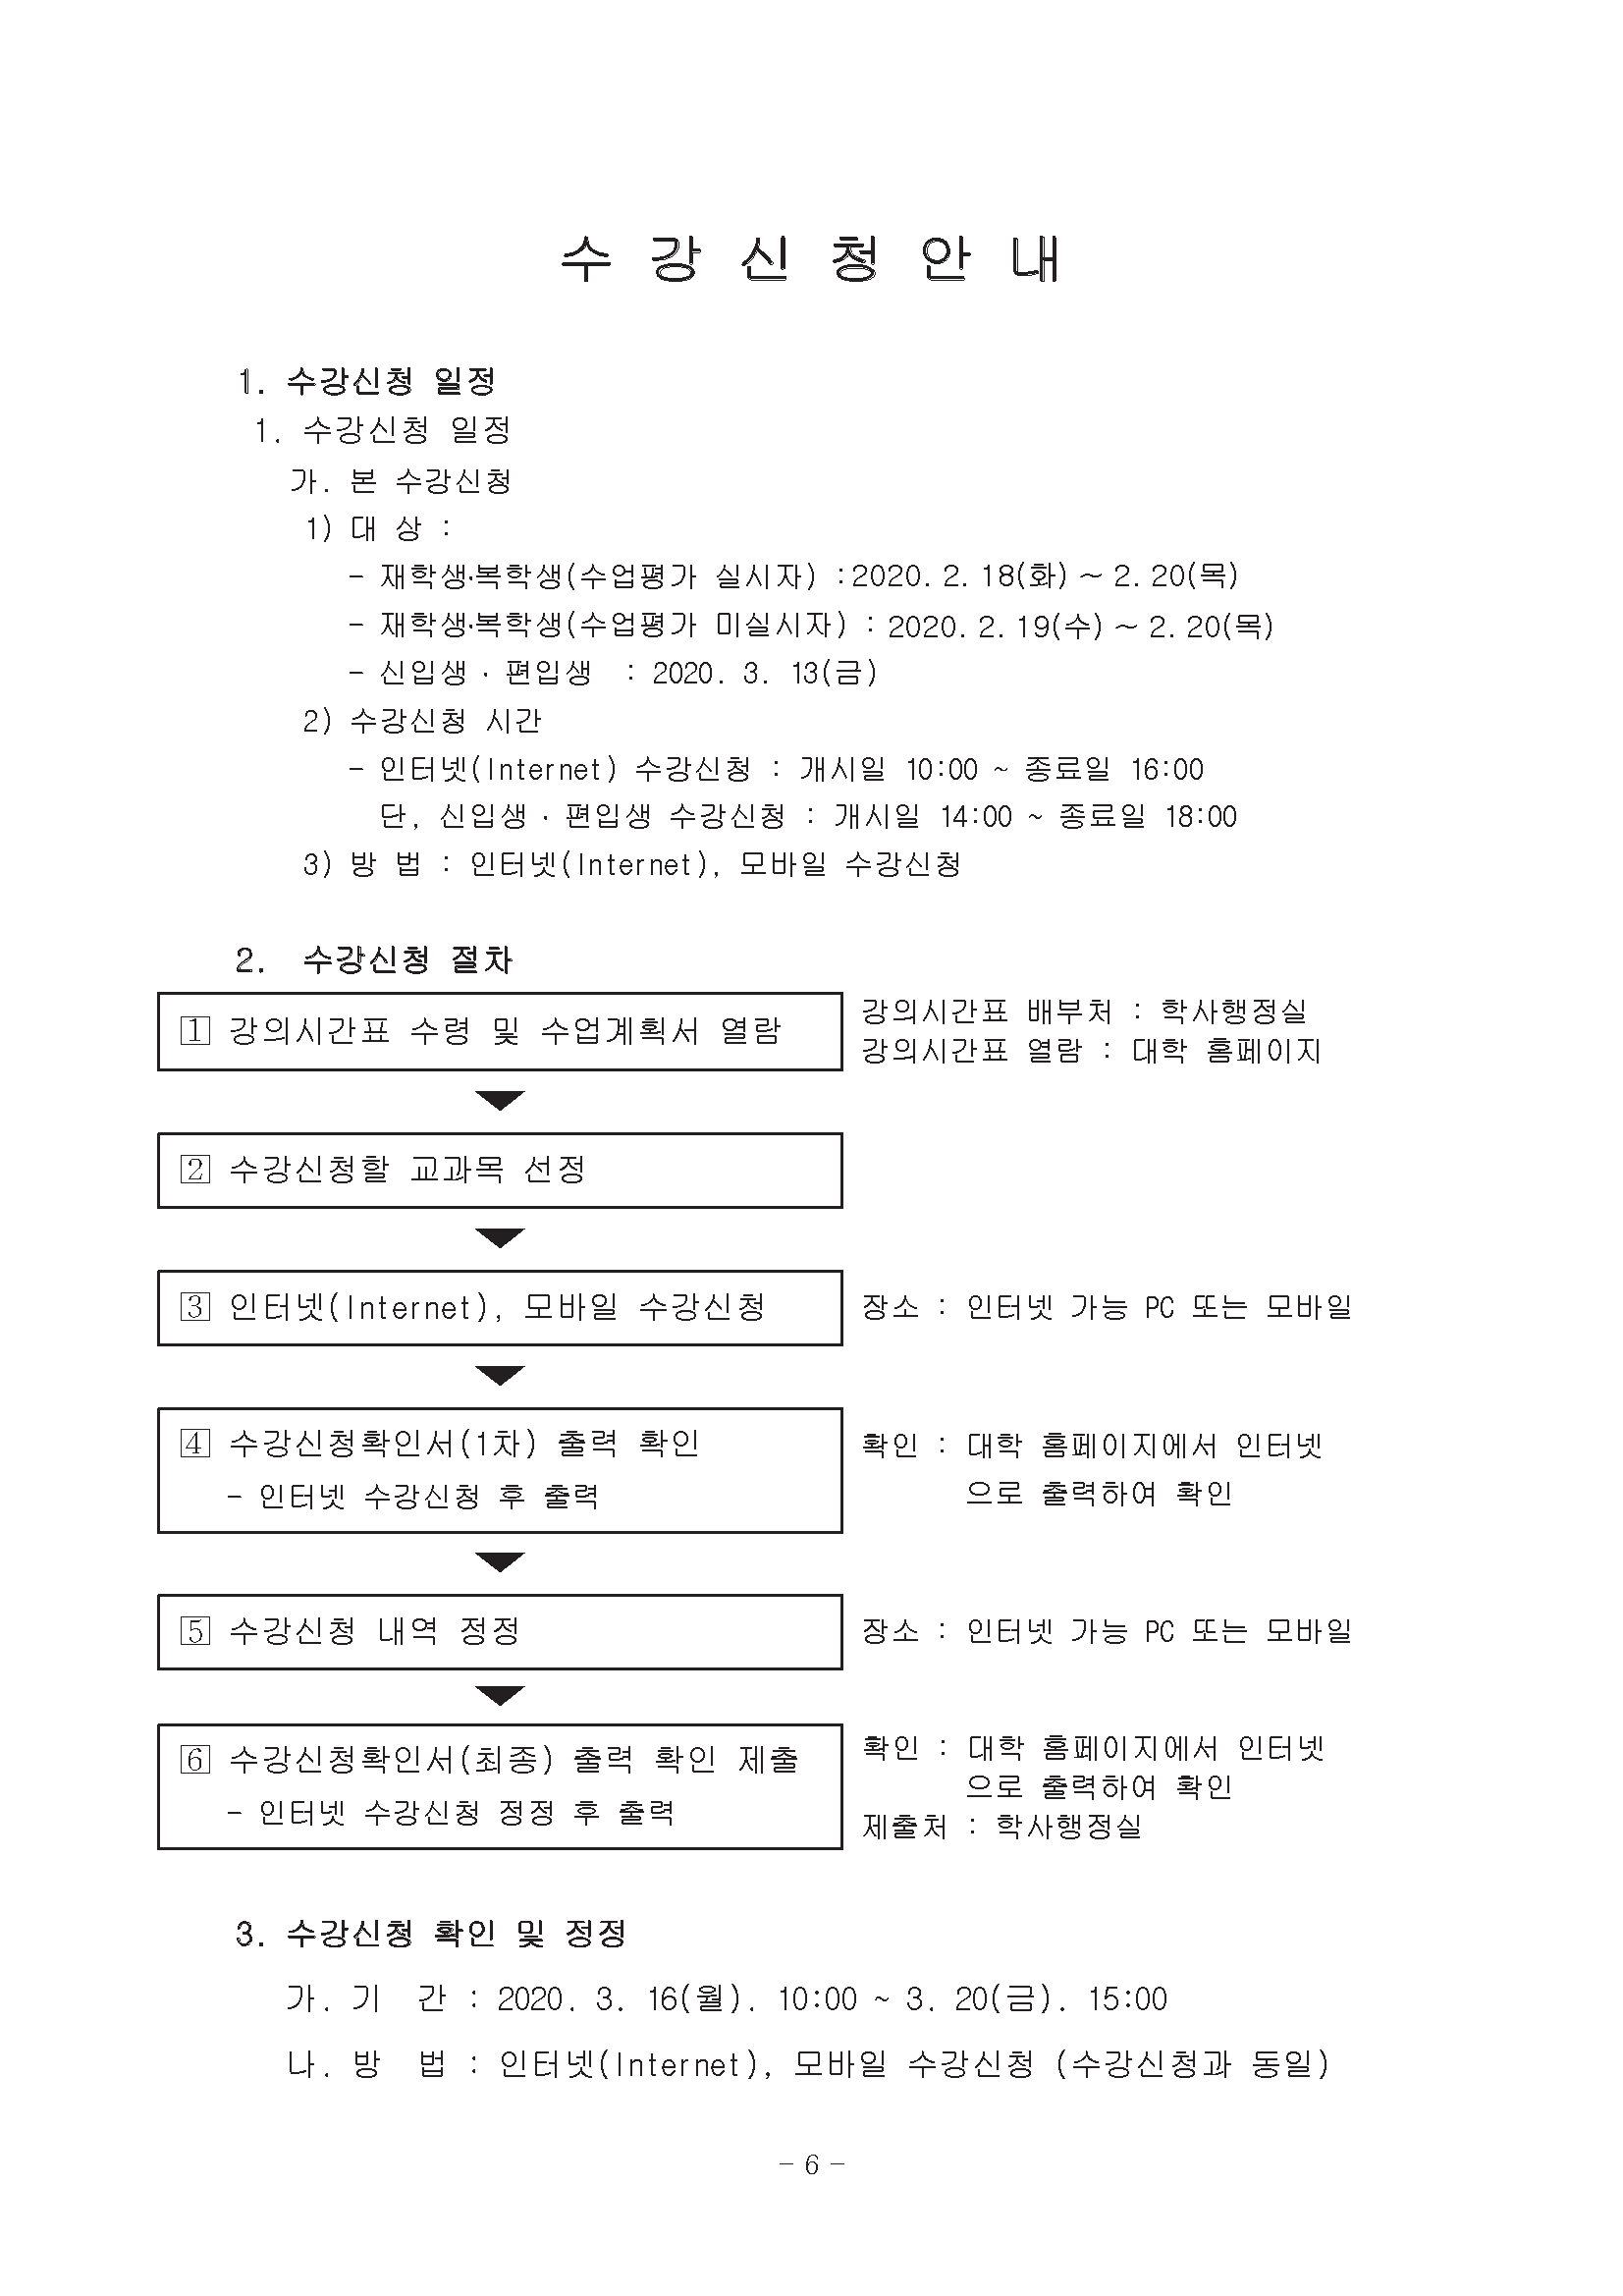 0302-2020학년도 1학기 강의시간표(교무팀_김동욱)6.png